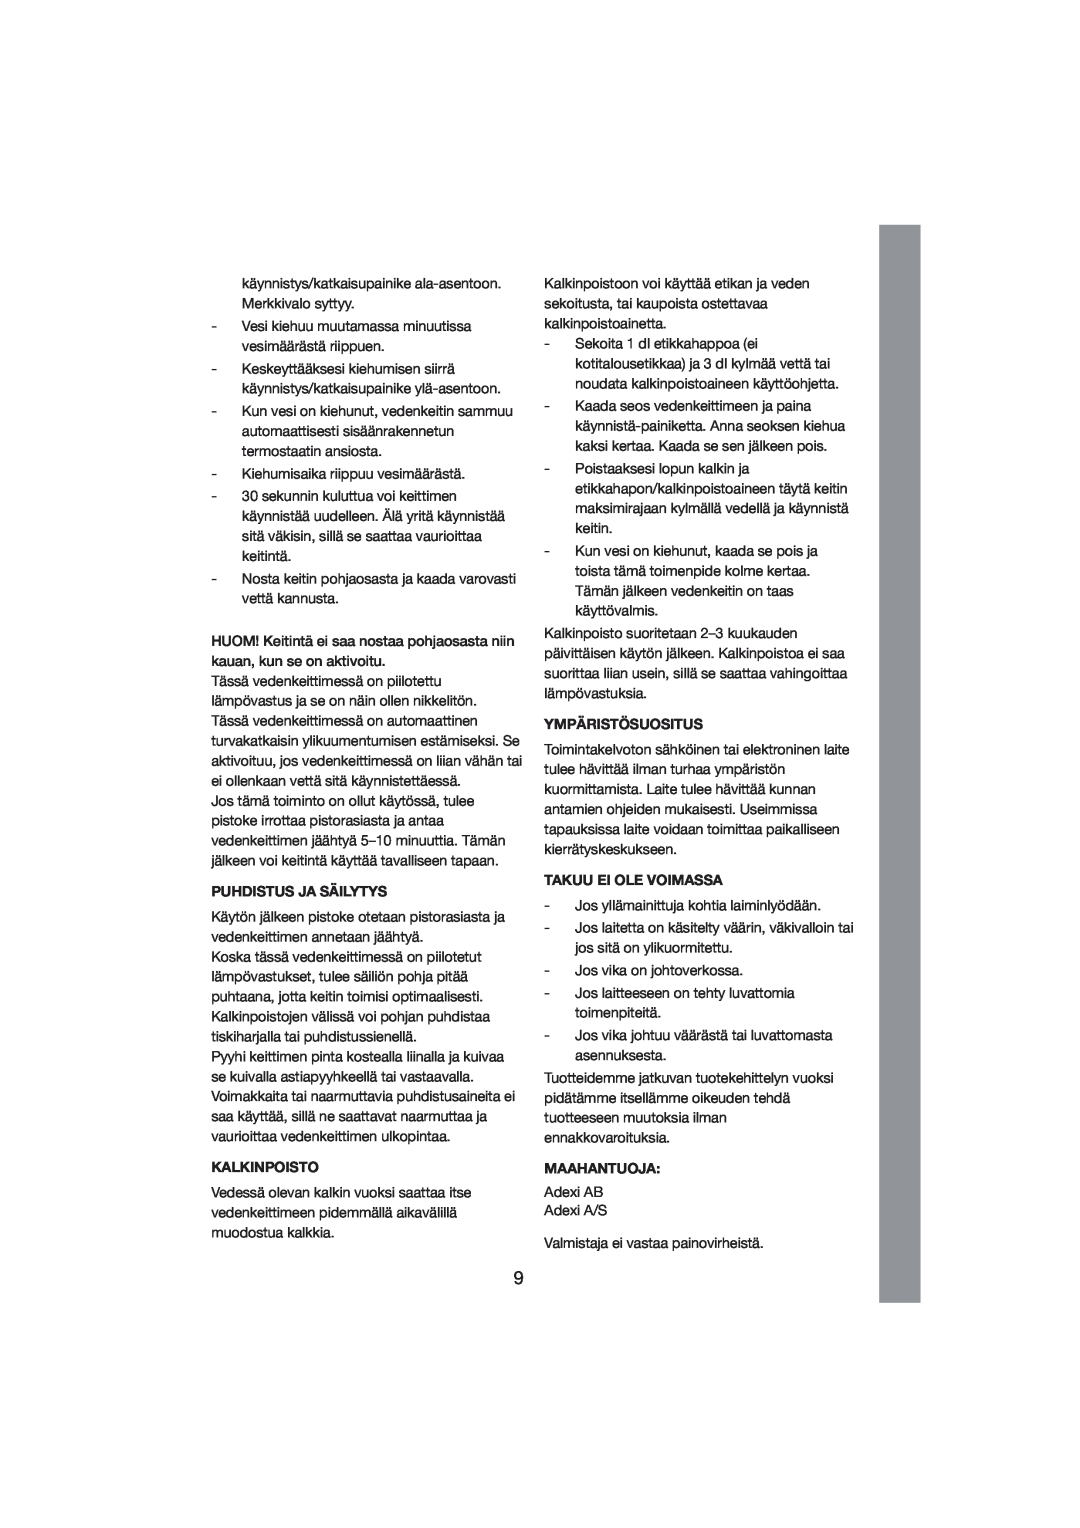 Melissa 245-023 manual Puhdistus Ja Säilytys, Kalkinpoisto, Ympäristösuositus, Takuu Ei Ole Voimassa, Maahantuoja 